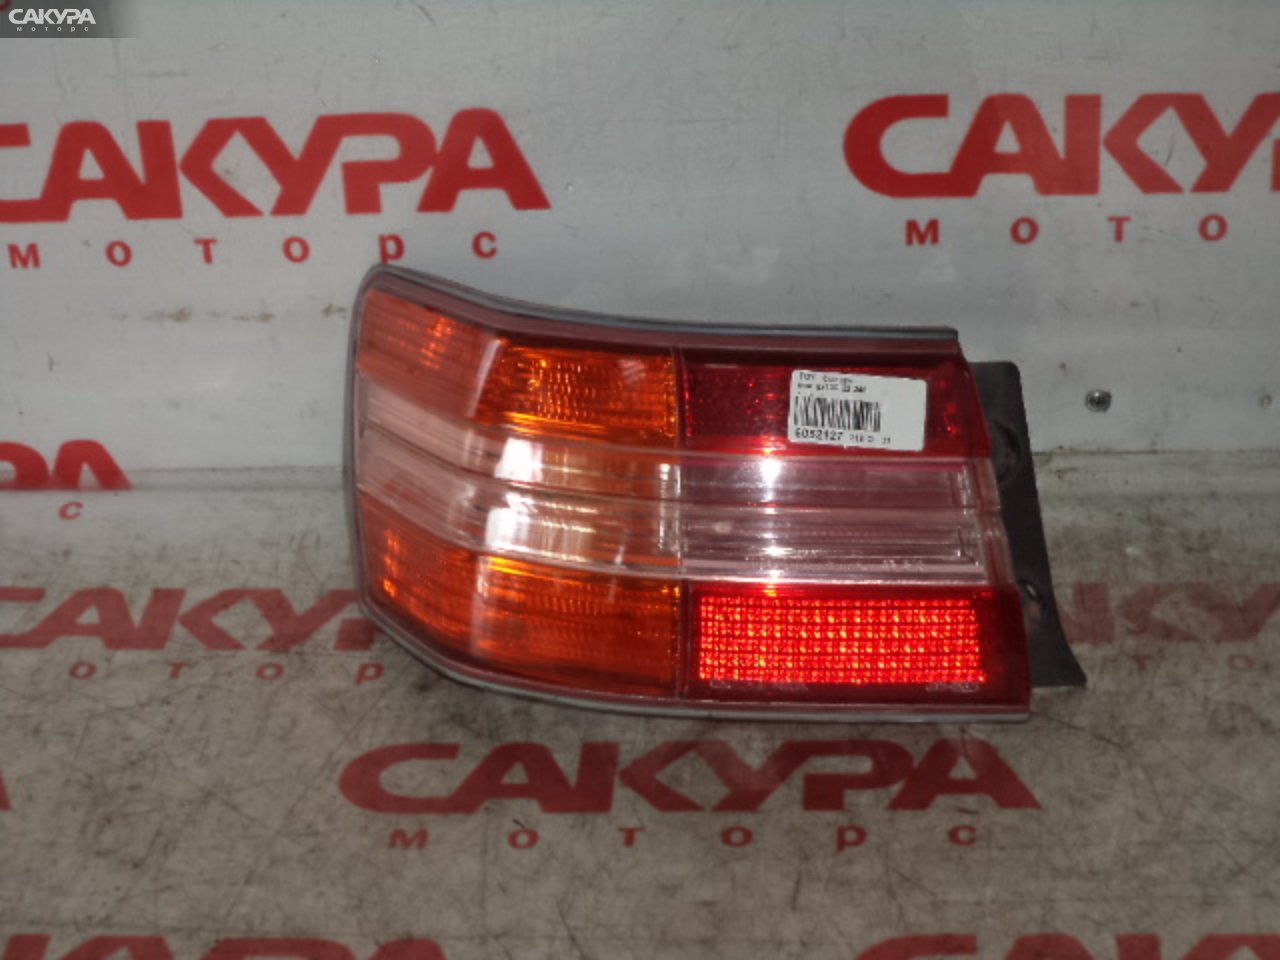 Фонарь стоп-сигнала левый Toyota Mark II GX100 22-248: купить в Сакура Кемерово.